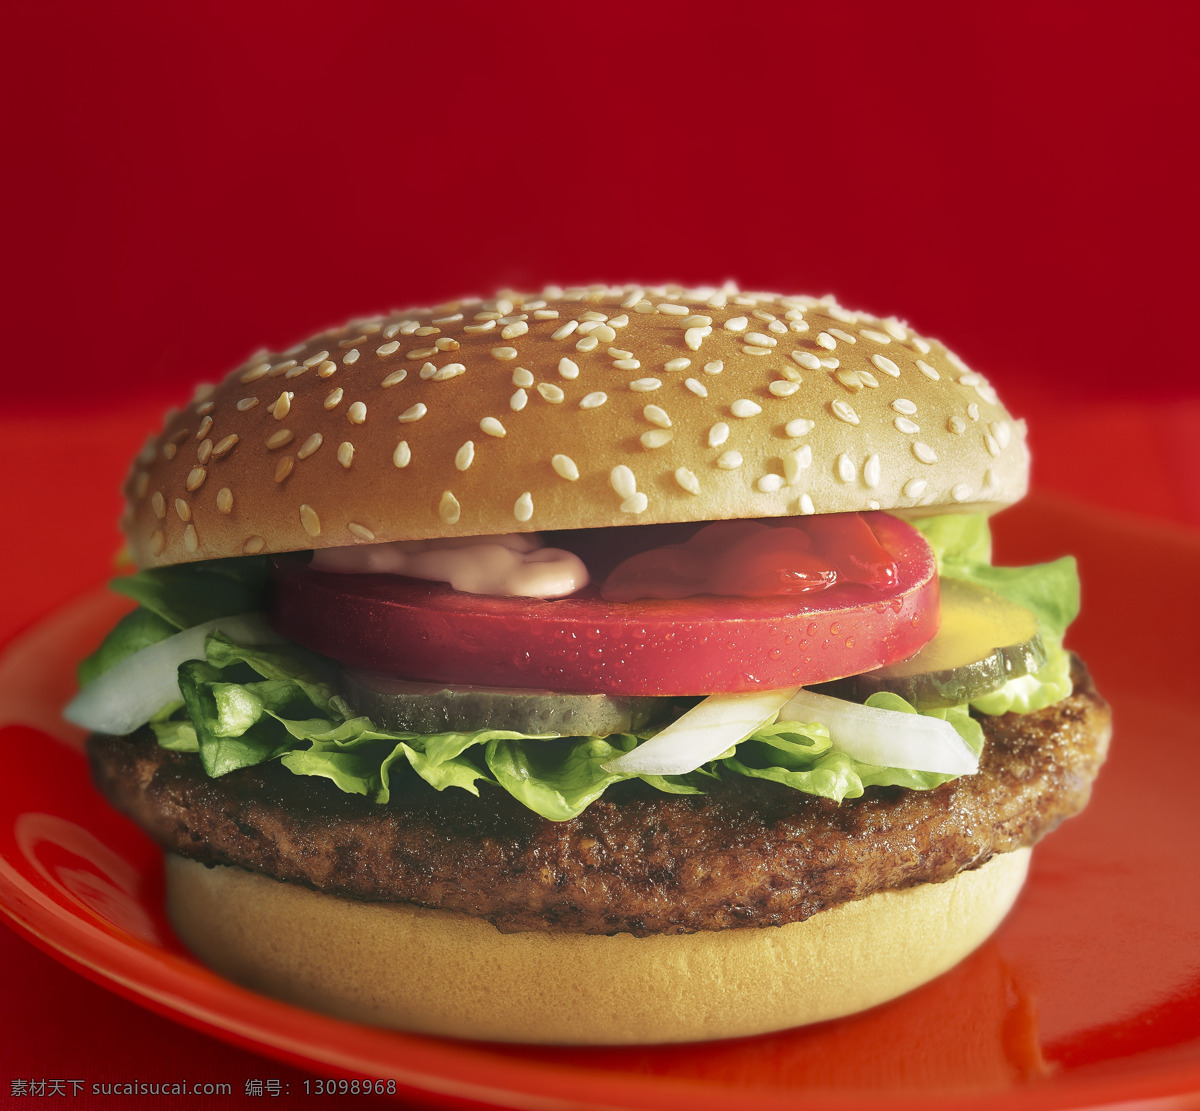 汉堡图片 汉堡 汉堡包 特写 实拍 美食 西餐 快餐 食物 高清 大图